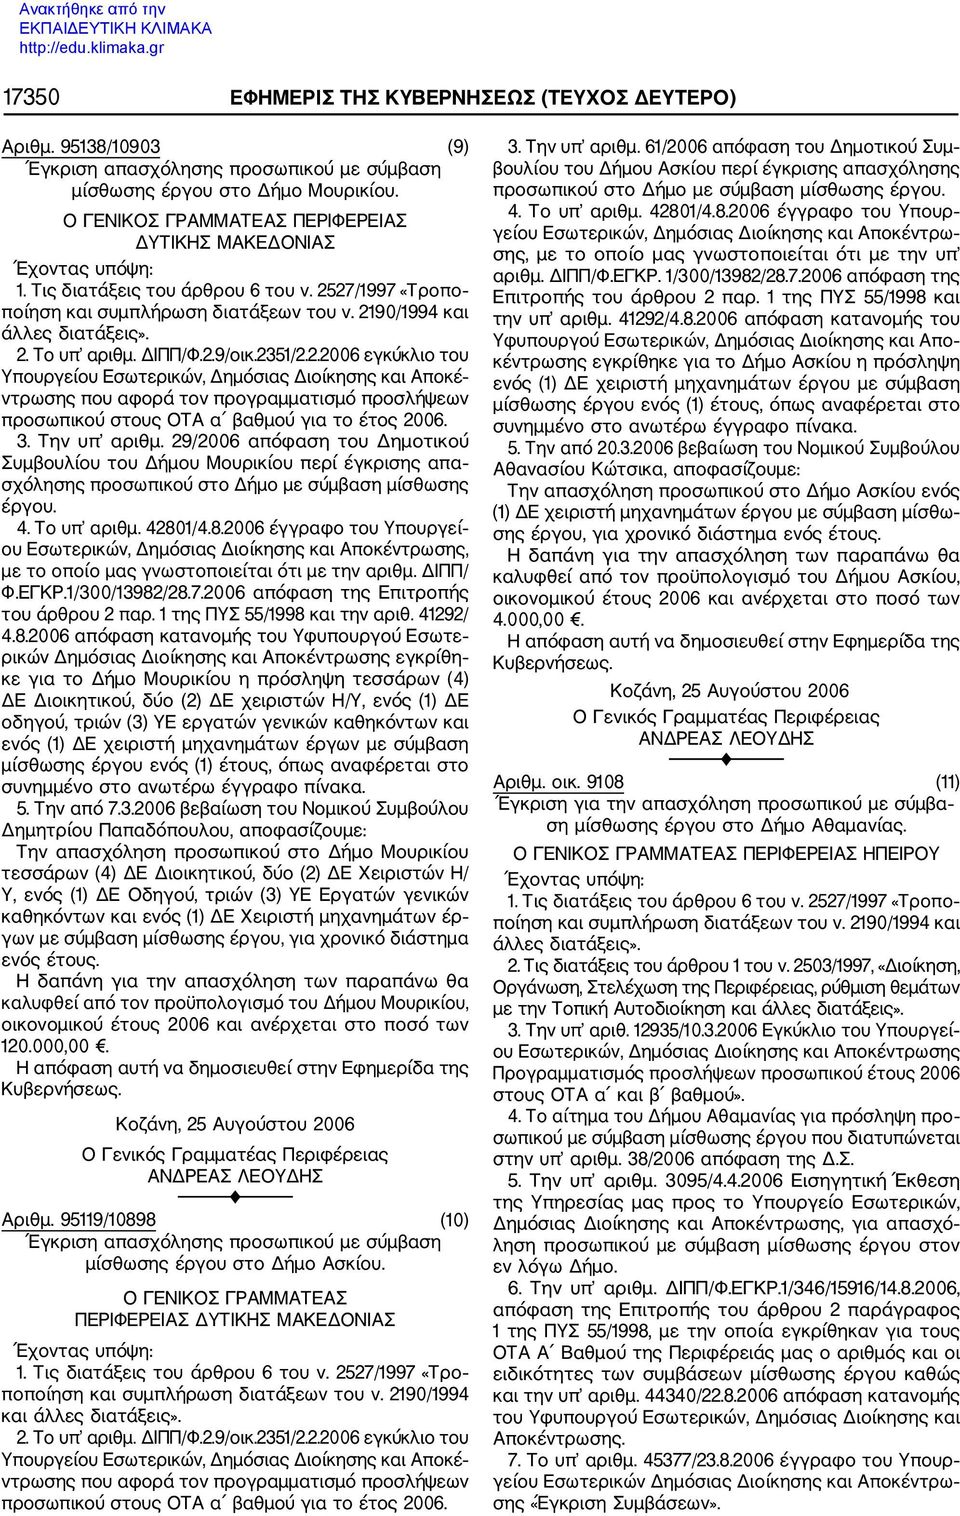 27/1997 «Τροπο ποίηση και συμπλήρωση διατάξεων του ν. 2190/1994 και άλλες διατάξεις». 2. Το υπ αριθμ. ΔΙΠΠ/Φ.2.9/οικ.2351/2.2.2006 εγκύκλιο του Υπουργείου Εσωτερικών, Δημόσιας Διοίκησης και Αποκέ ντρωσης που αφορά τον προγραμματισμό προσλήψεων προσωπικού στους ΟΤΑ α βαθμού για το έτος 2006.